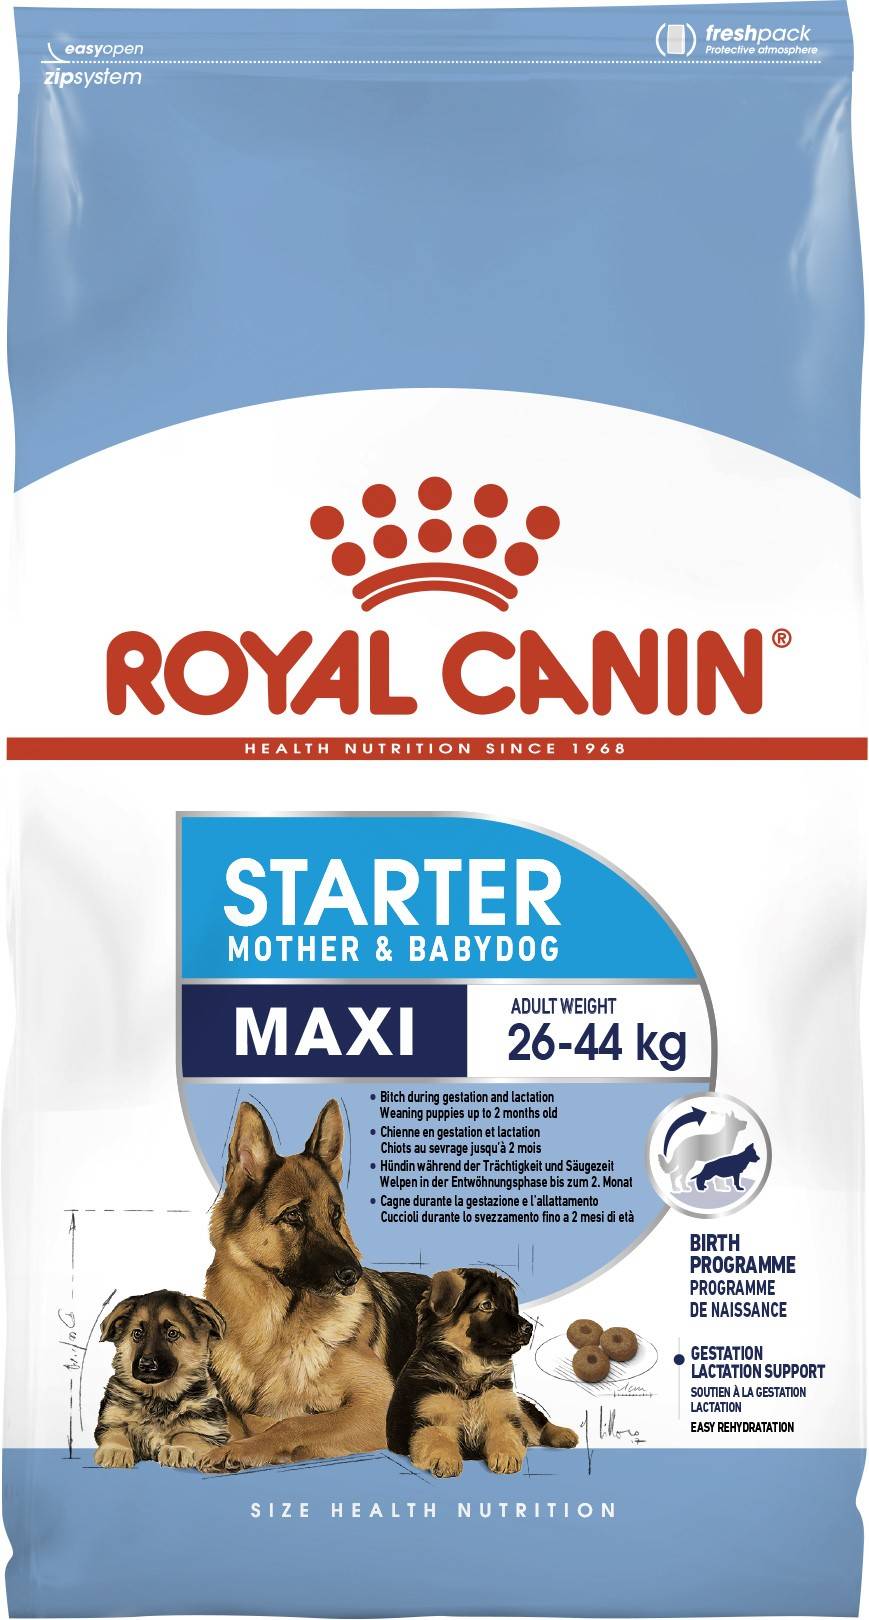 ROYAL CANIN MAXI STARTER MOTHER & BABYDOG – сухой корм для щенков больших пород и сук в последний период беременности